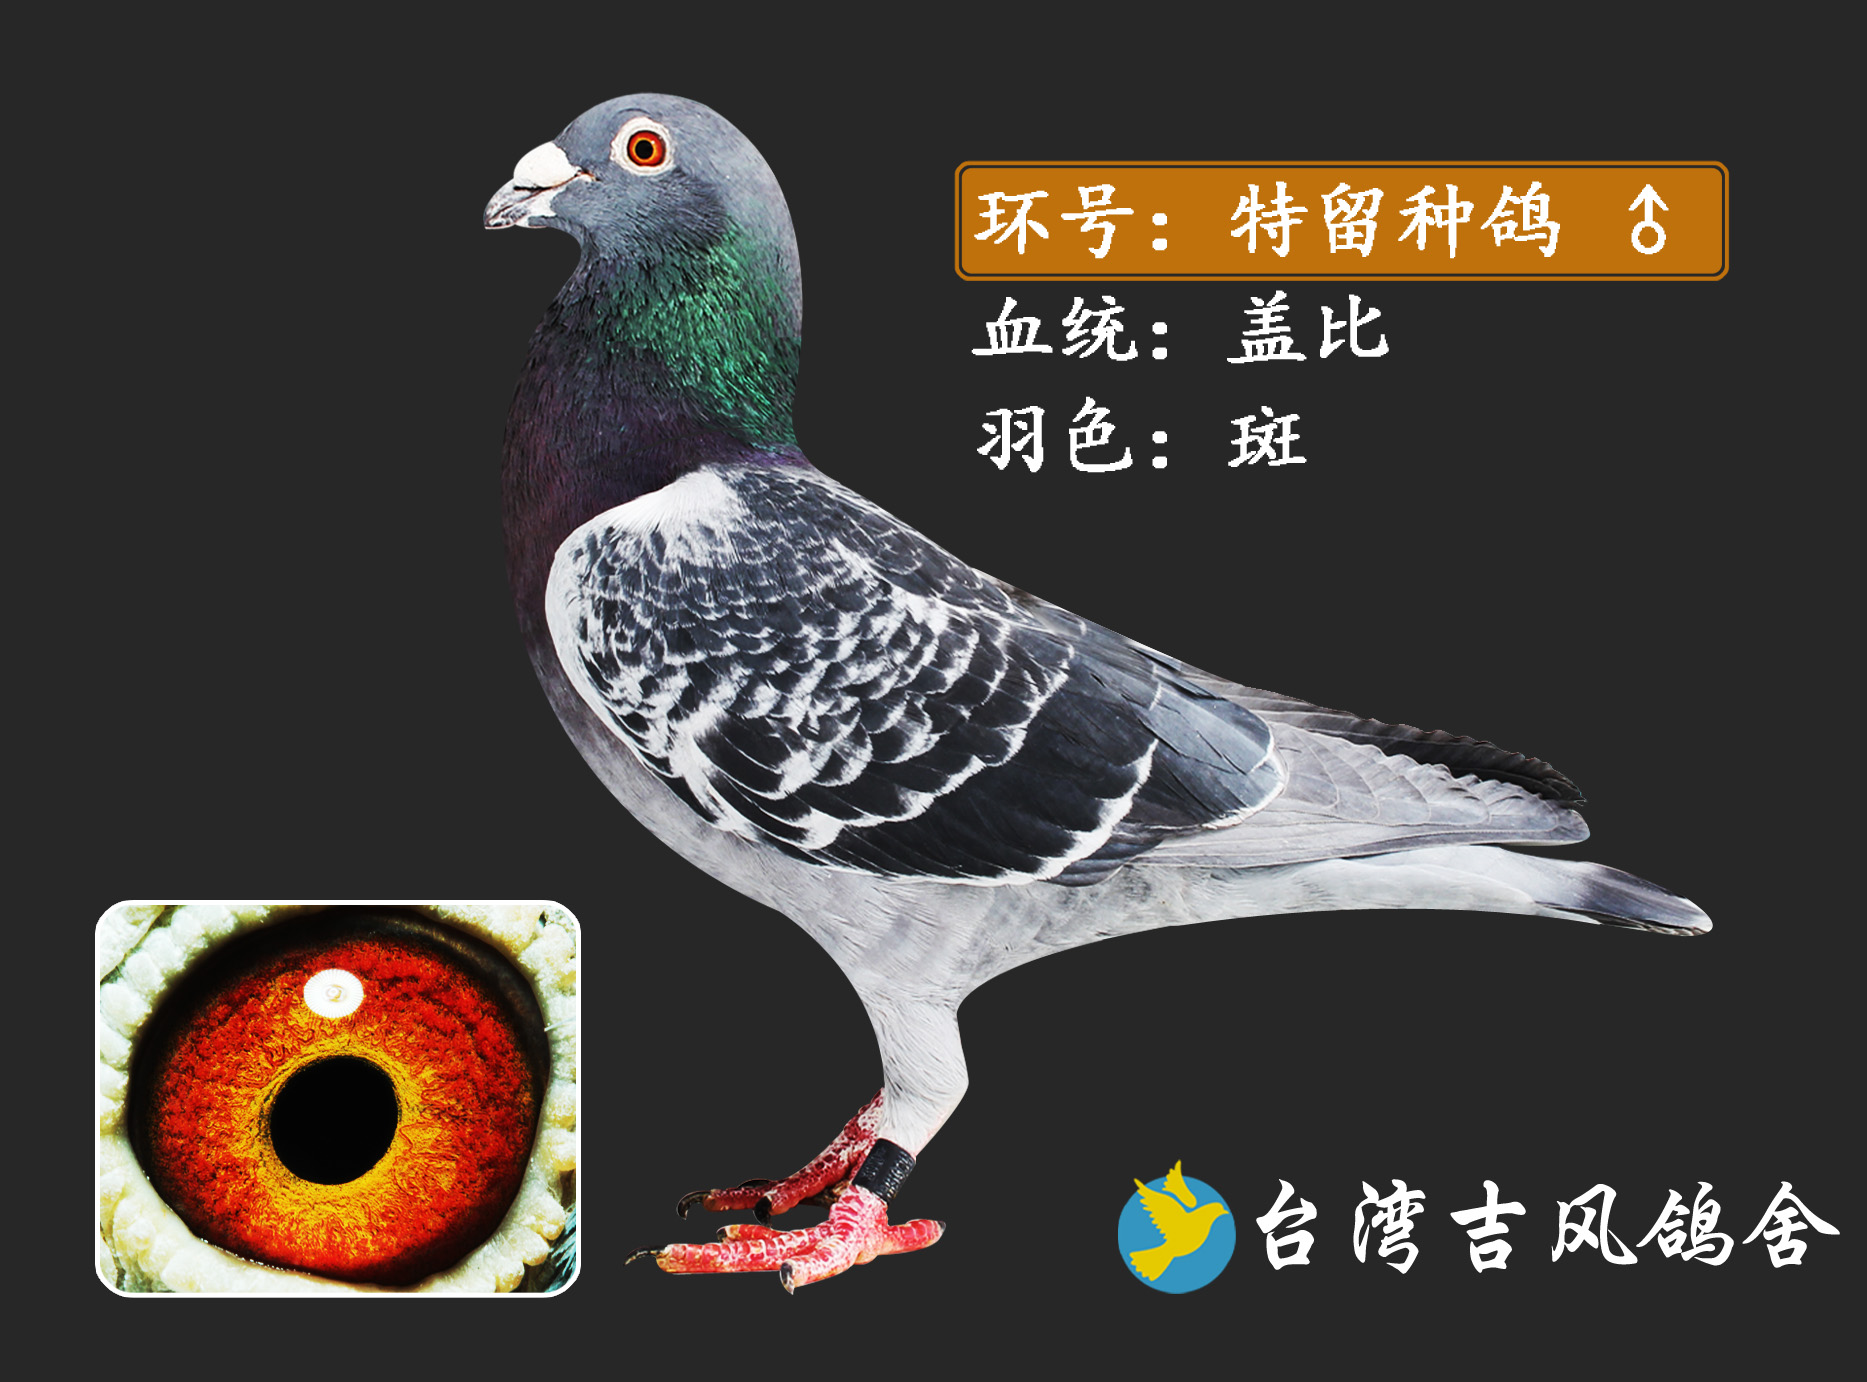 盖比_台湾吉风鸽舍_ ag188.com爱鸽商城_中国信鸽信息